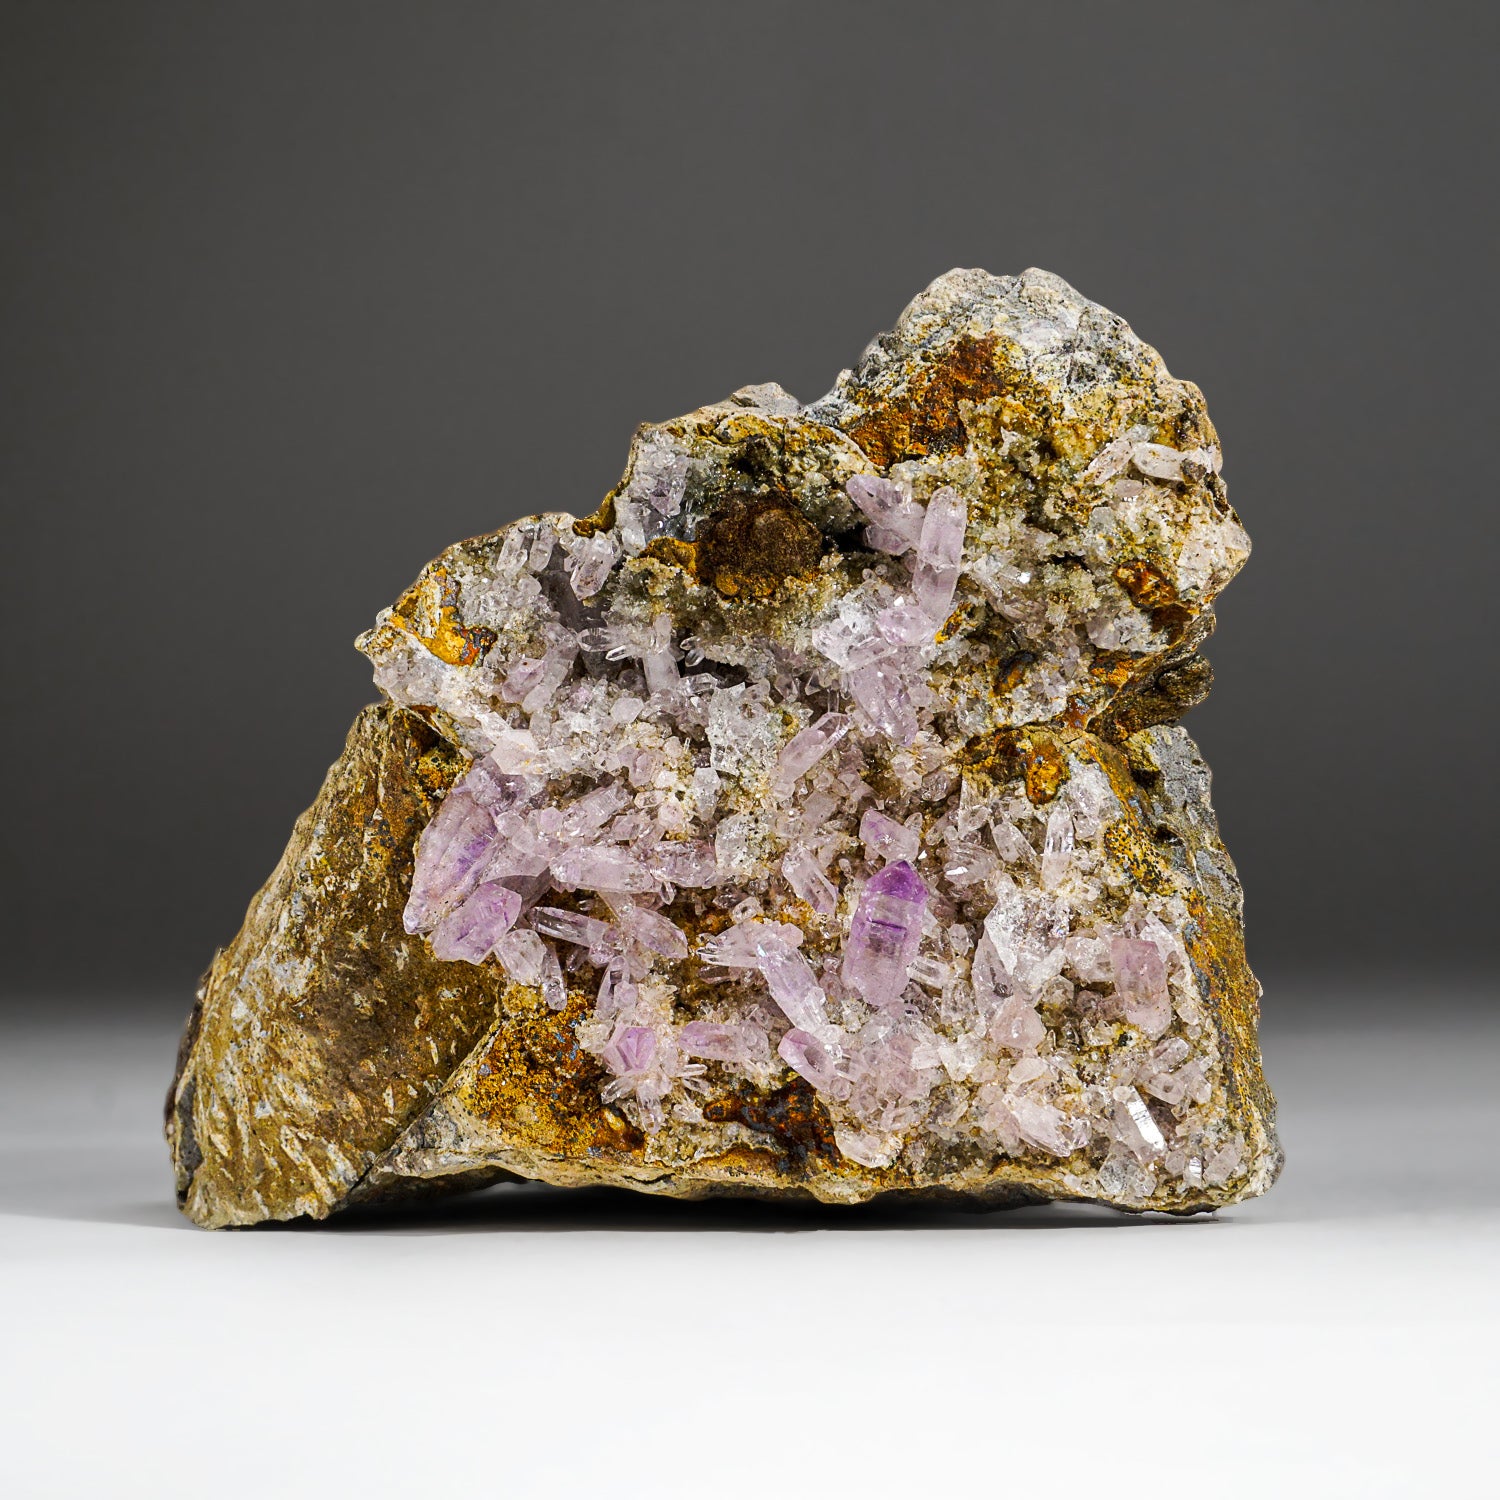 Amethyst from Piedra Parada, Las Vigas de Ramirez, Veracruz, Mexico